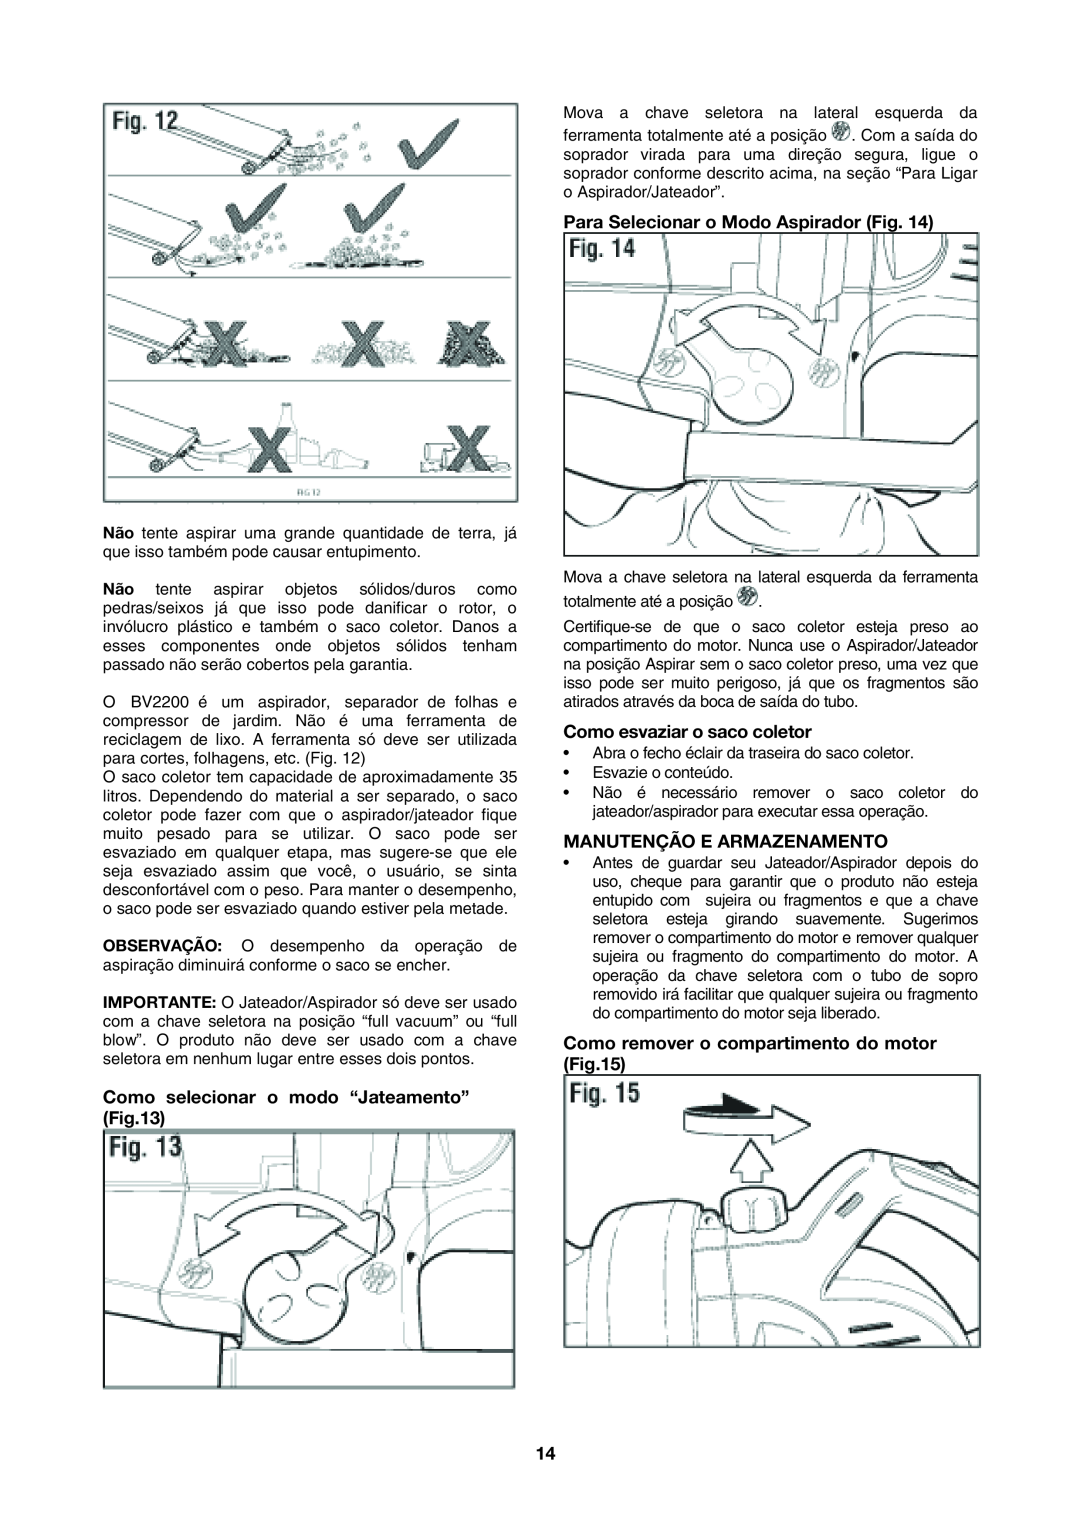 Black & Decker BV2200 instruction manual Como selecionar o modo “Jateamento”, Para Selecionar o Modo Aspirador Fig 